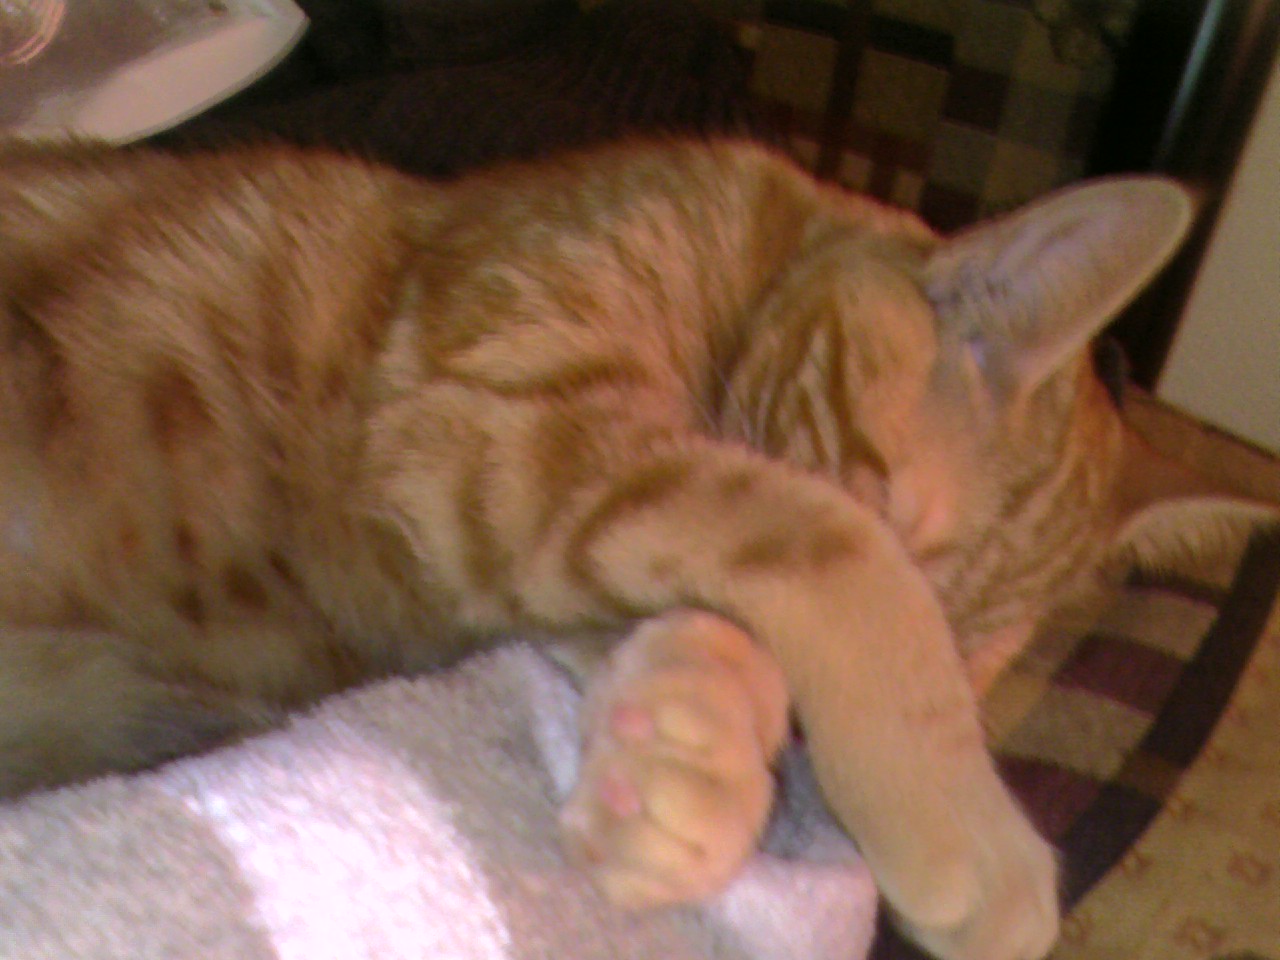 Clément le chat est allongé, le visage caché derrière ses pattes qui sont croisées sur mon pied